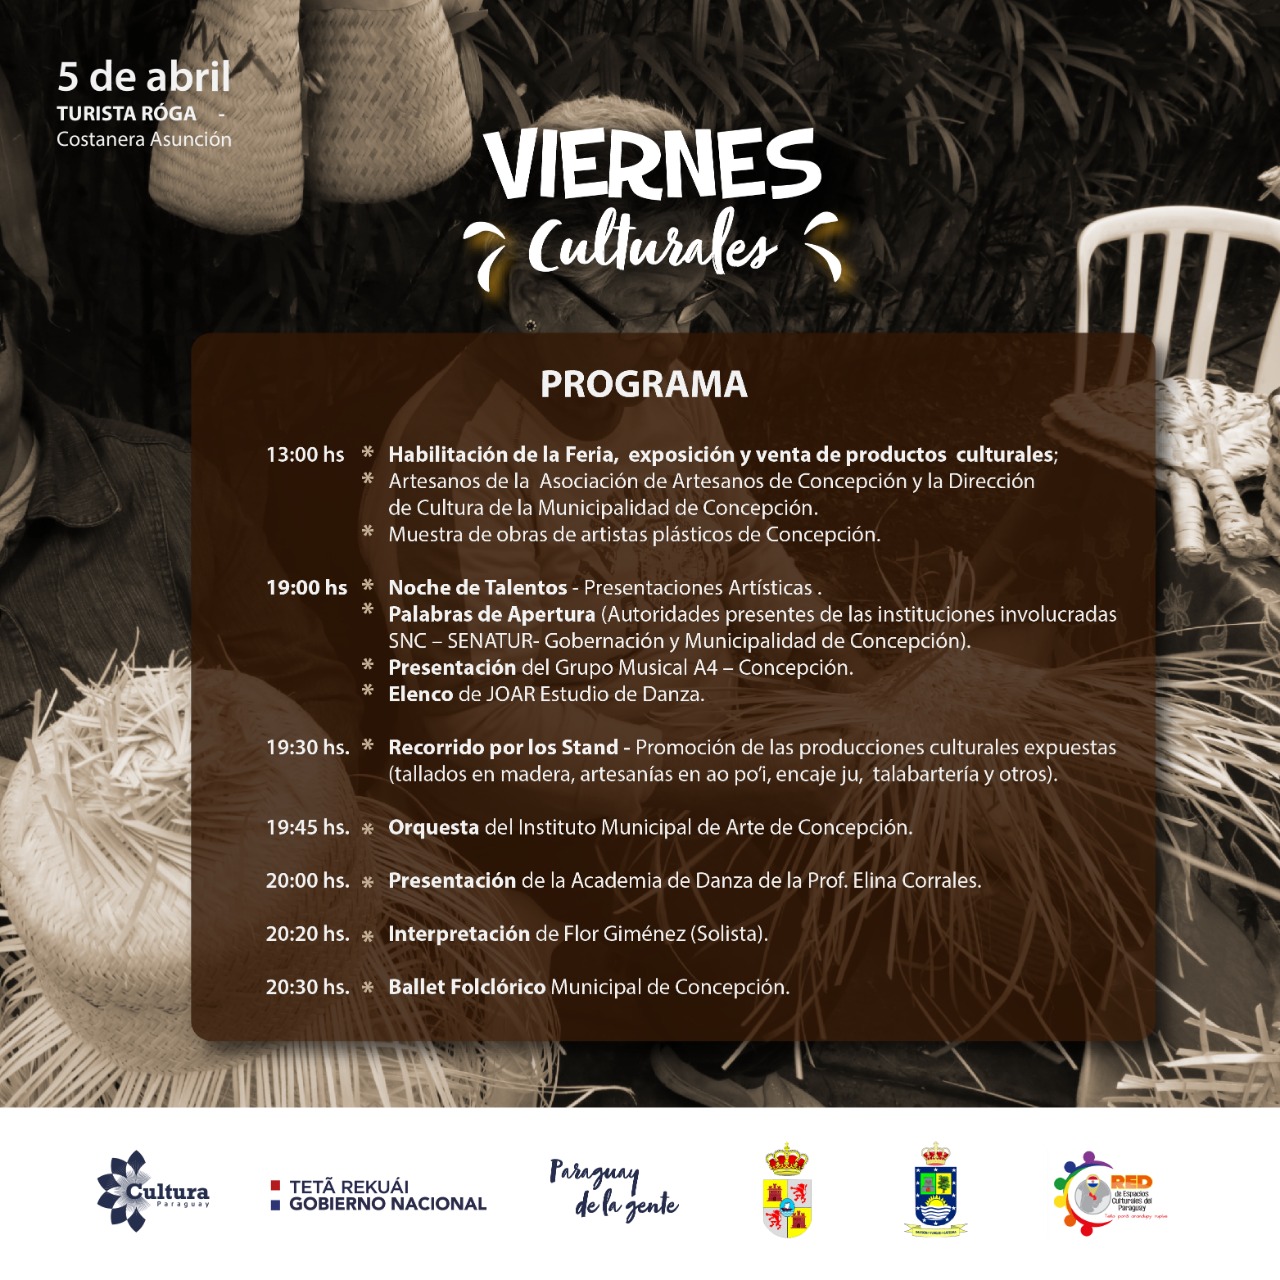 Artistas concepcioneros protagonizarán el “Viernes Cultural” en la Costanera de Asunción imagen